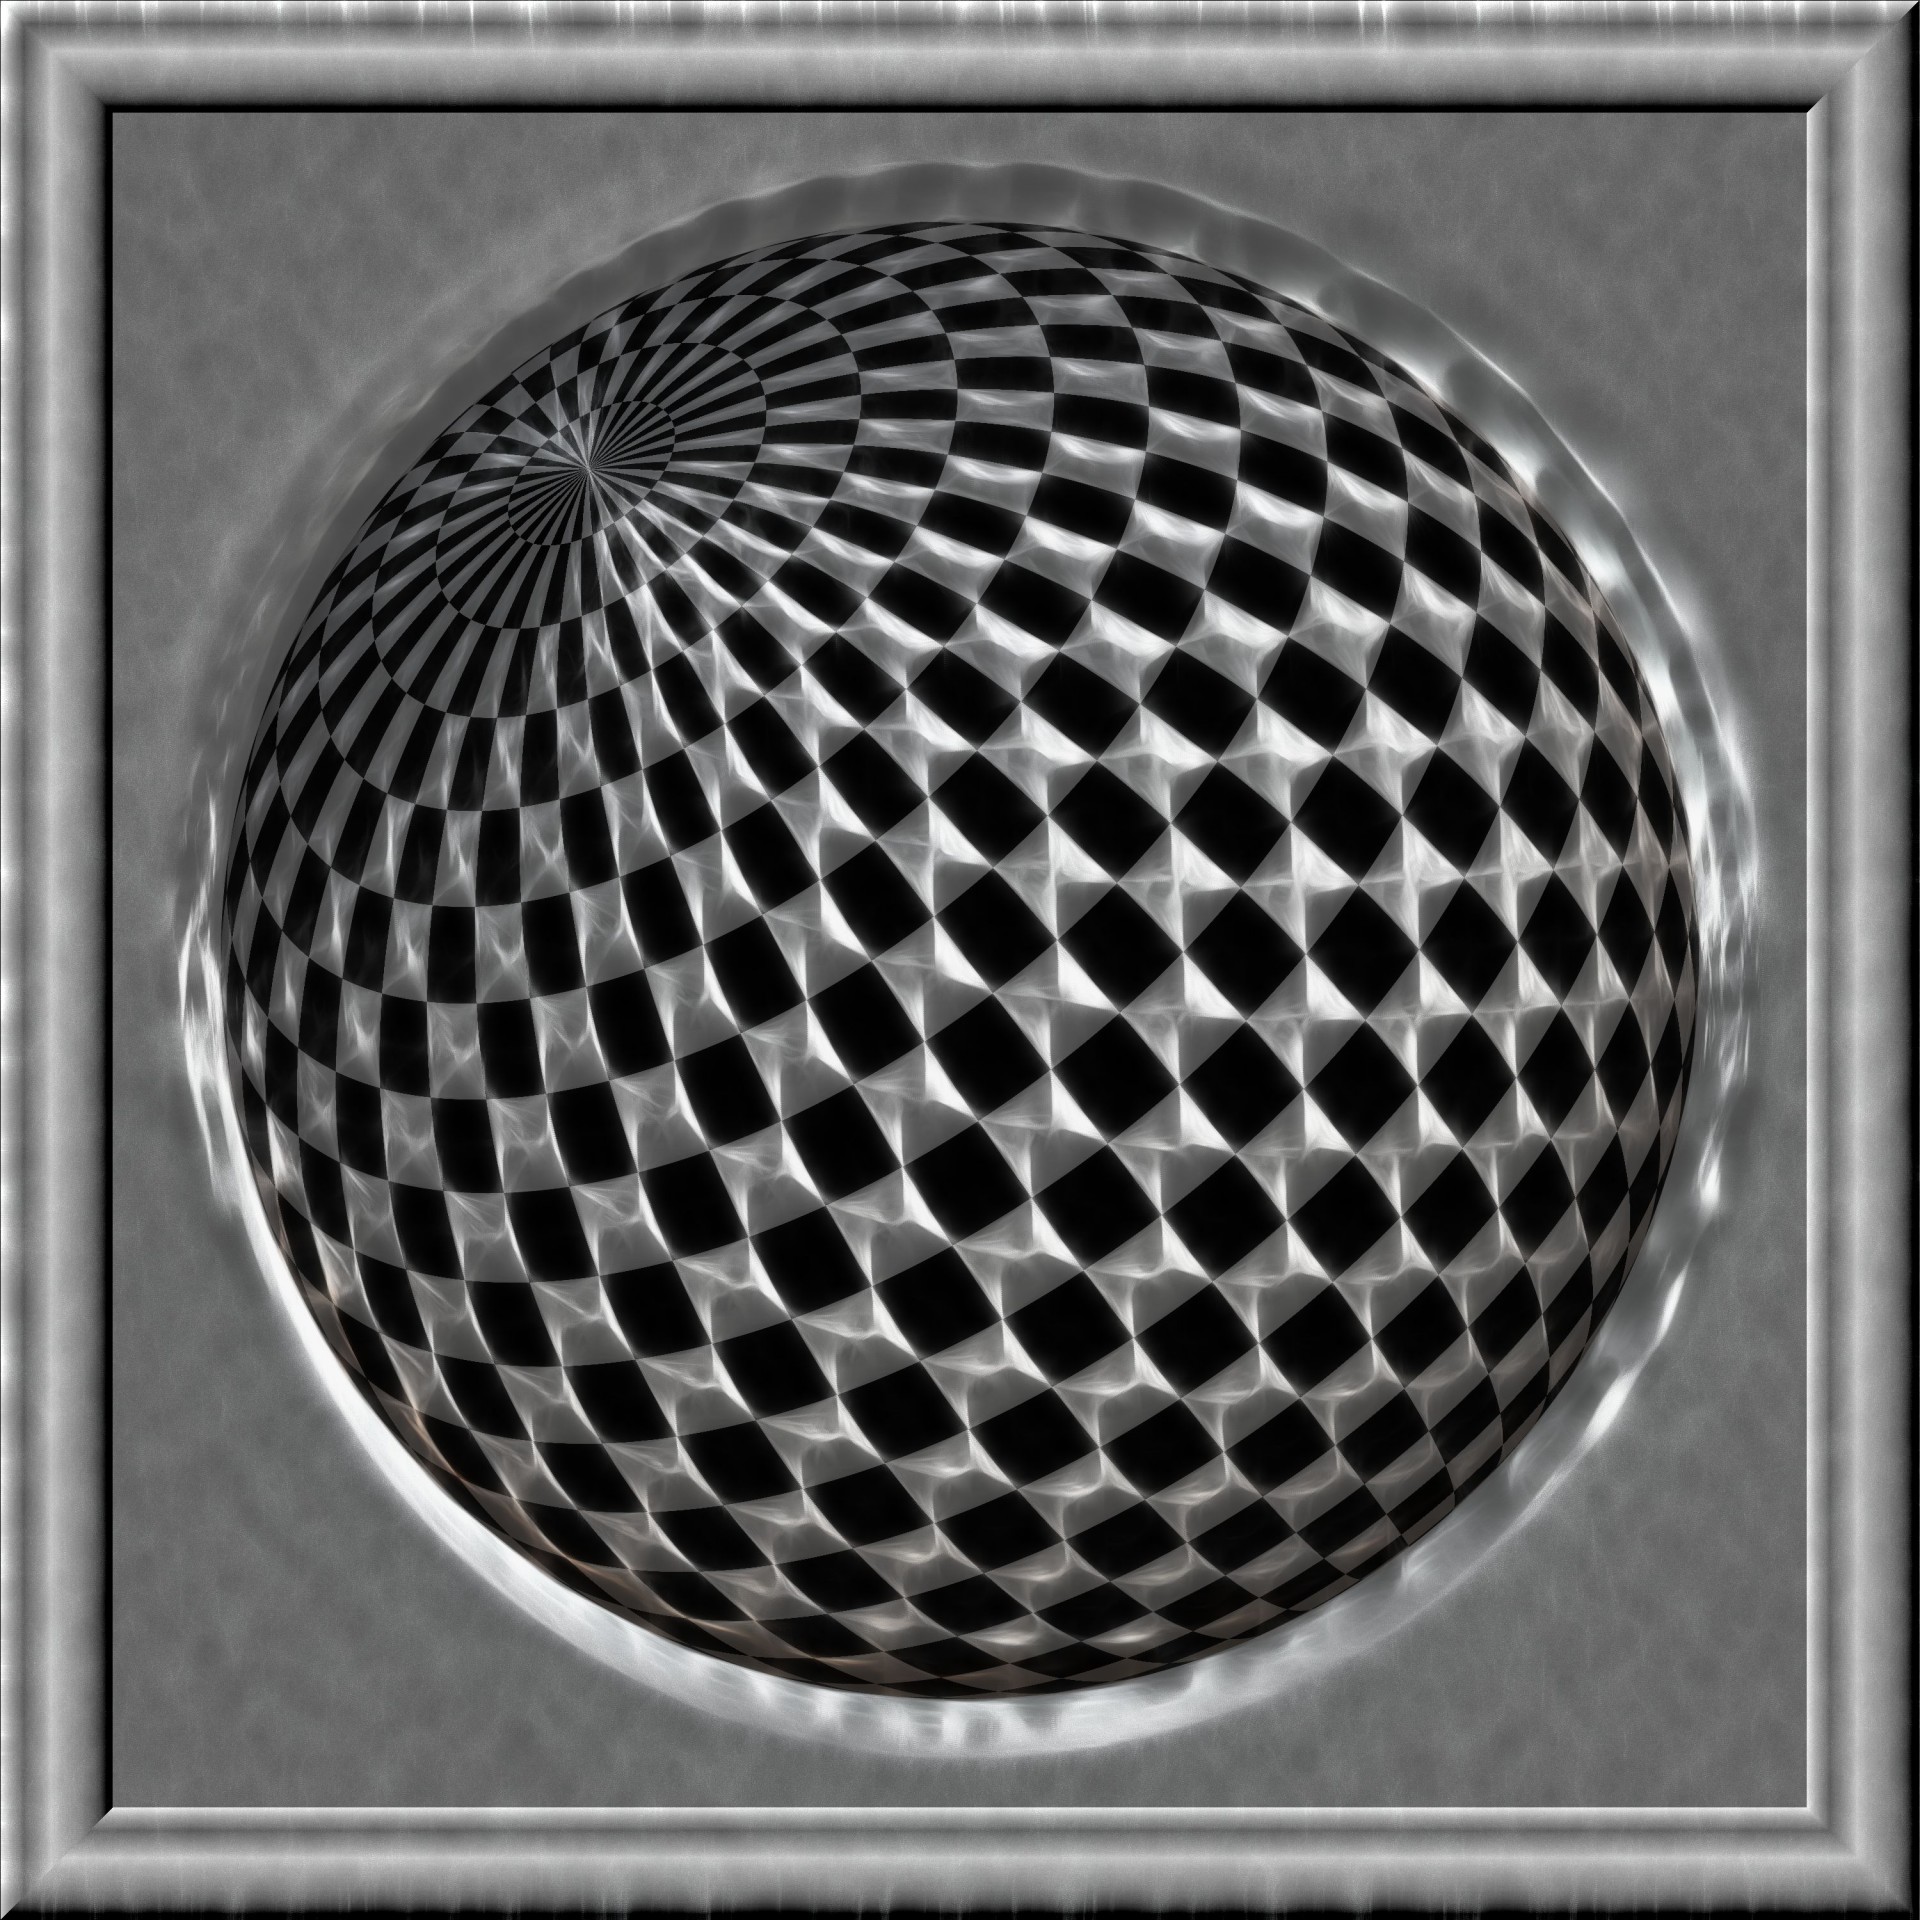 Fractal Checker Ball